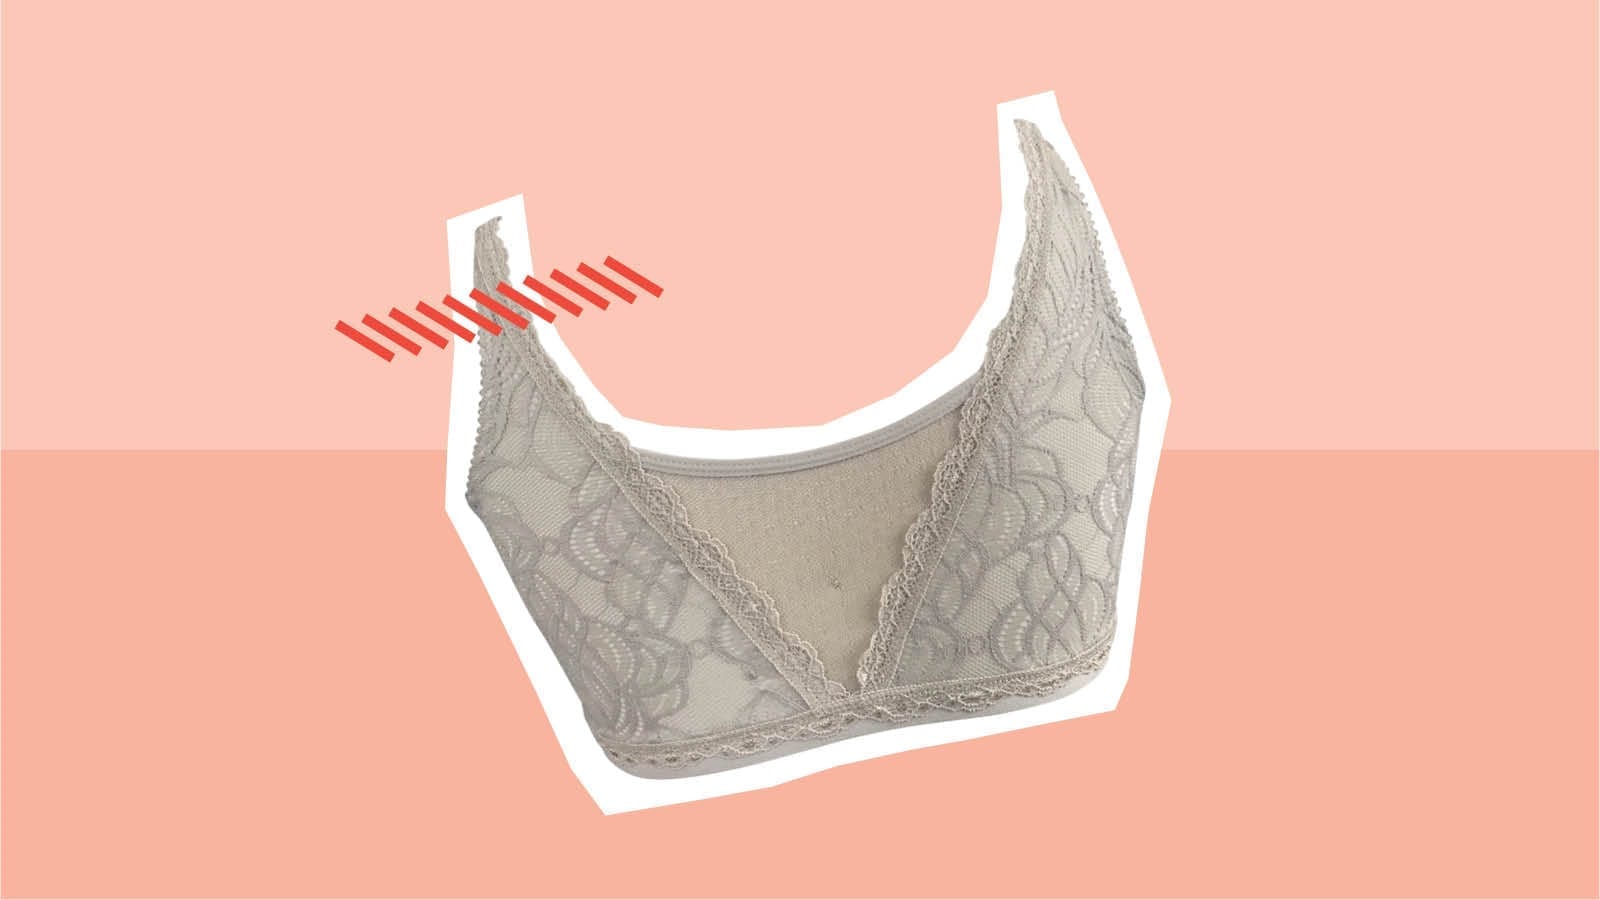 Anaono mastectomy bra